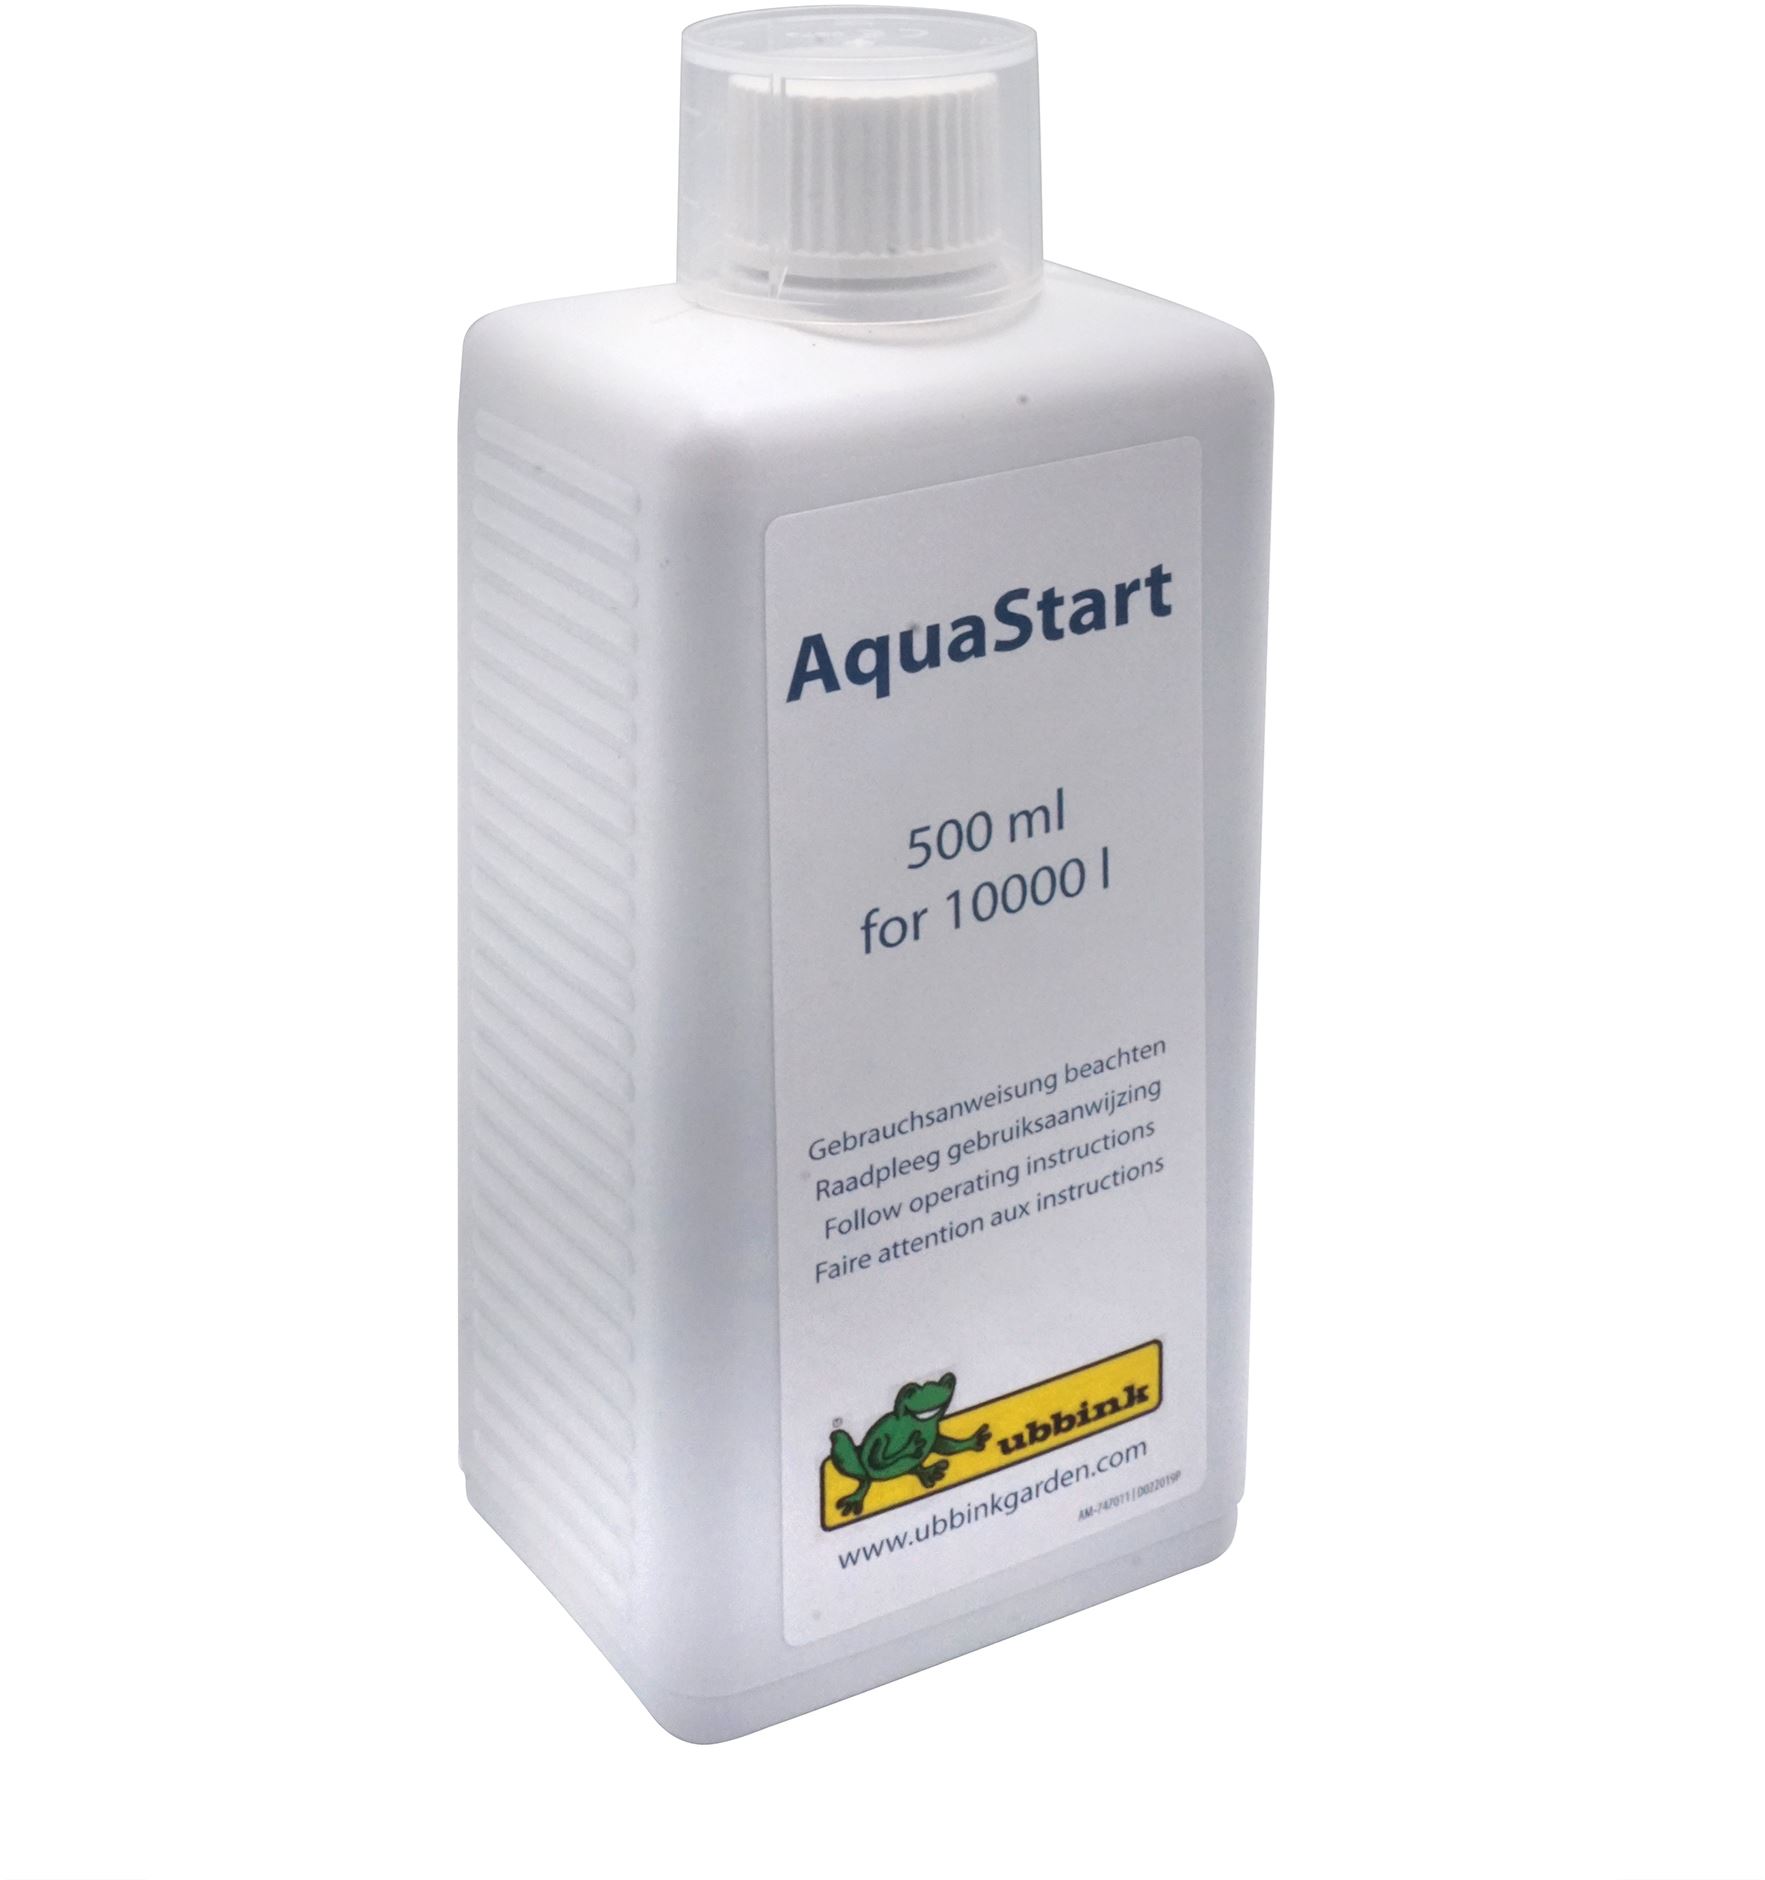 Aqua-Start-500-ml-voor-gezond-vijverwater-voor-planten-en-vissen-met-stabiel-pH-waarde